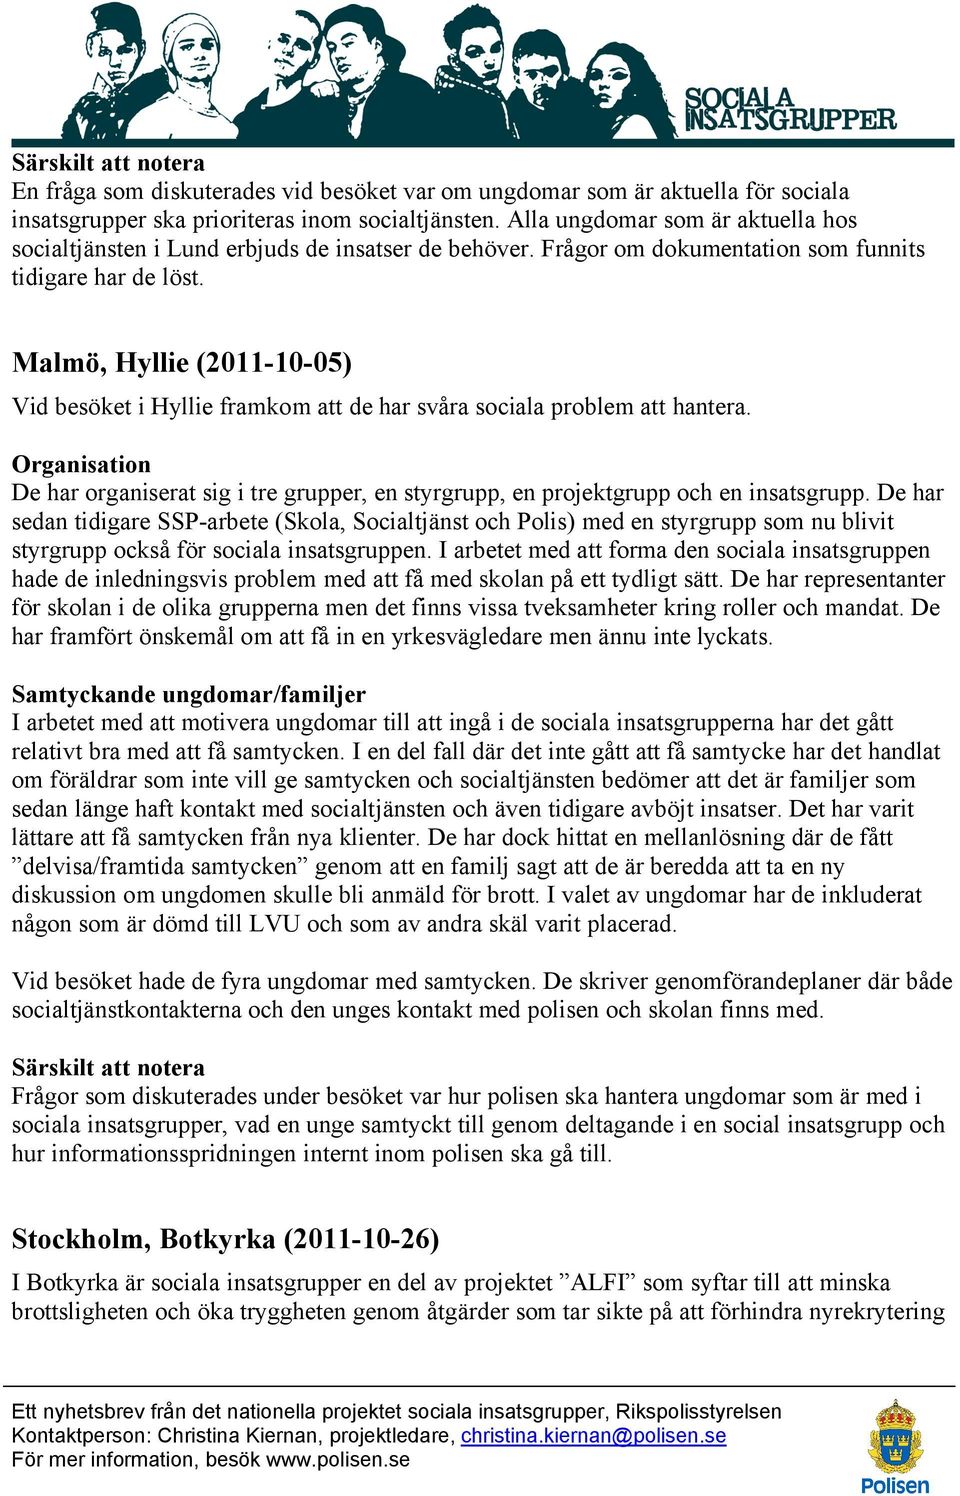 Malmö, Hyllie (2011-10-05) Vid besöket i Hyllie framkom att de har svåra sociala problem att hantera. De har organiserat sig i tre grupper, en styrgrupp, en projektgrupp och en insatsgrupp.